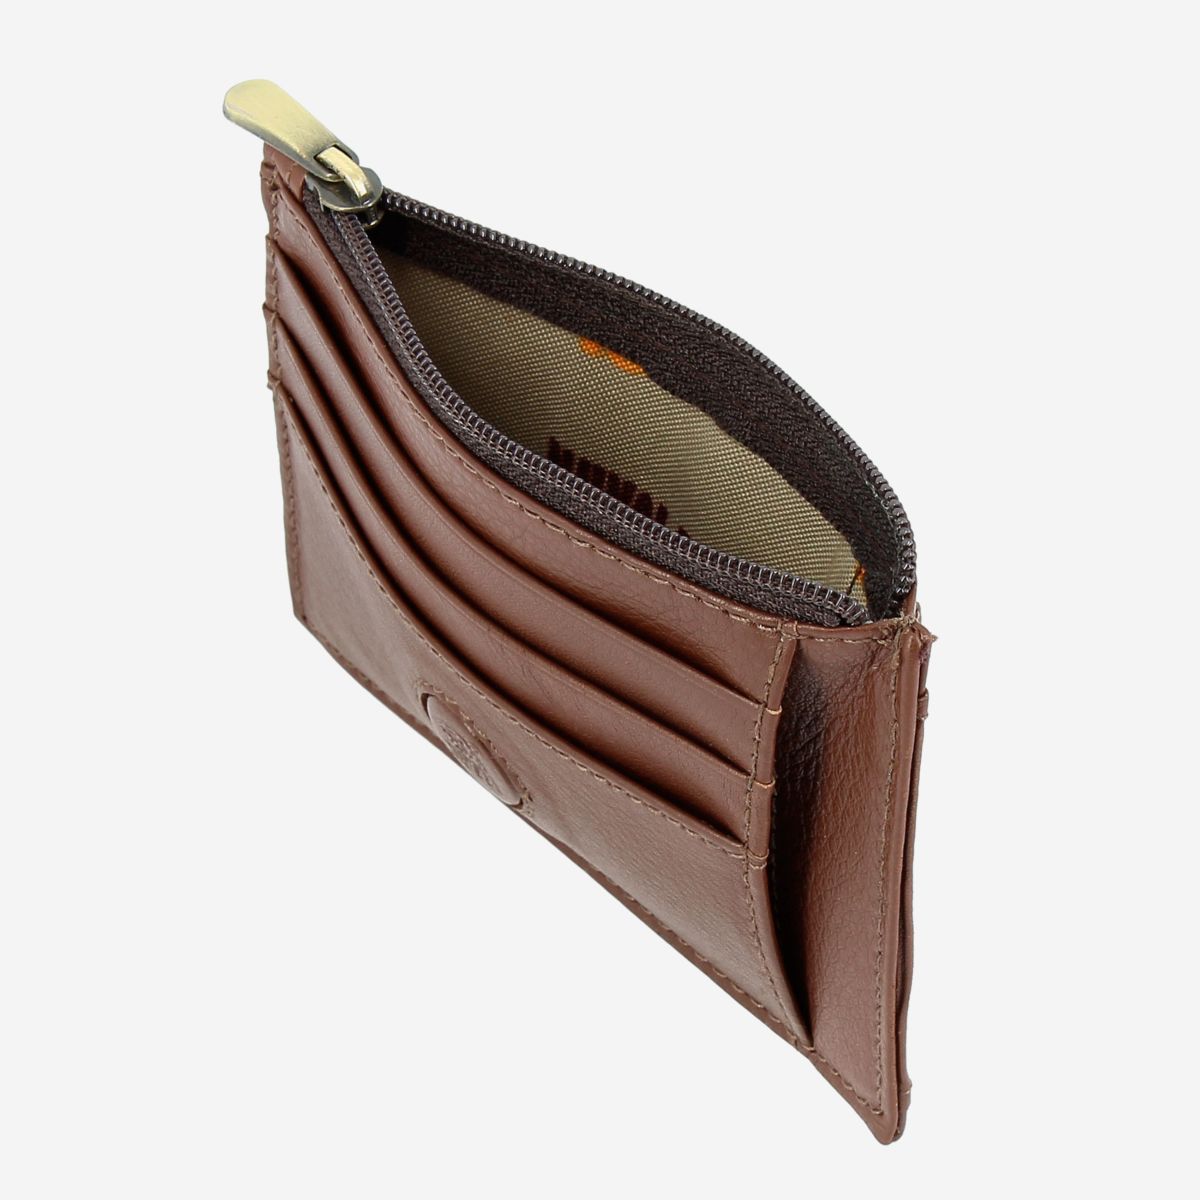 NUVOLA PELLE Slim Leather Credit Card Wallet - Dark Brown